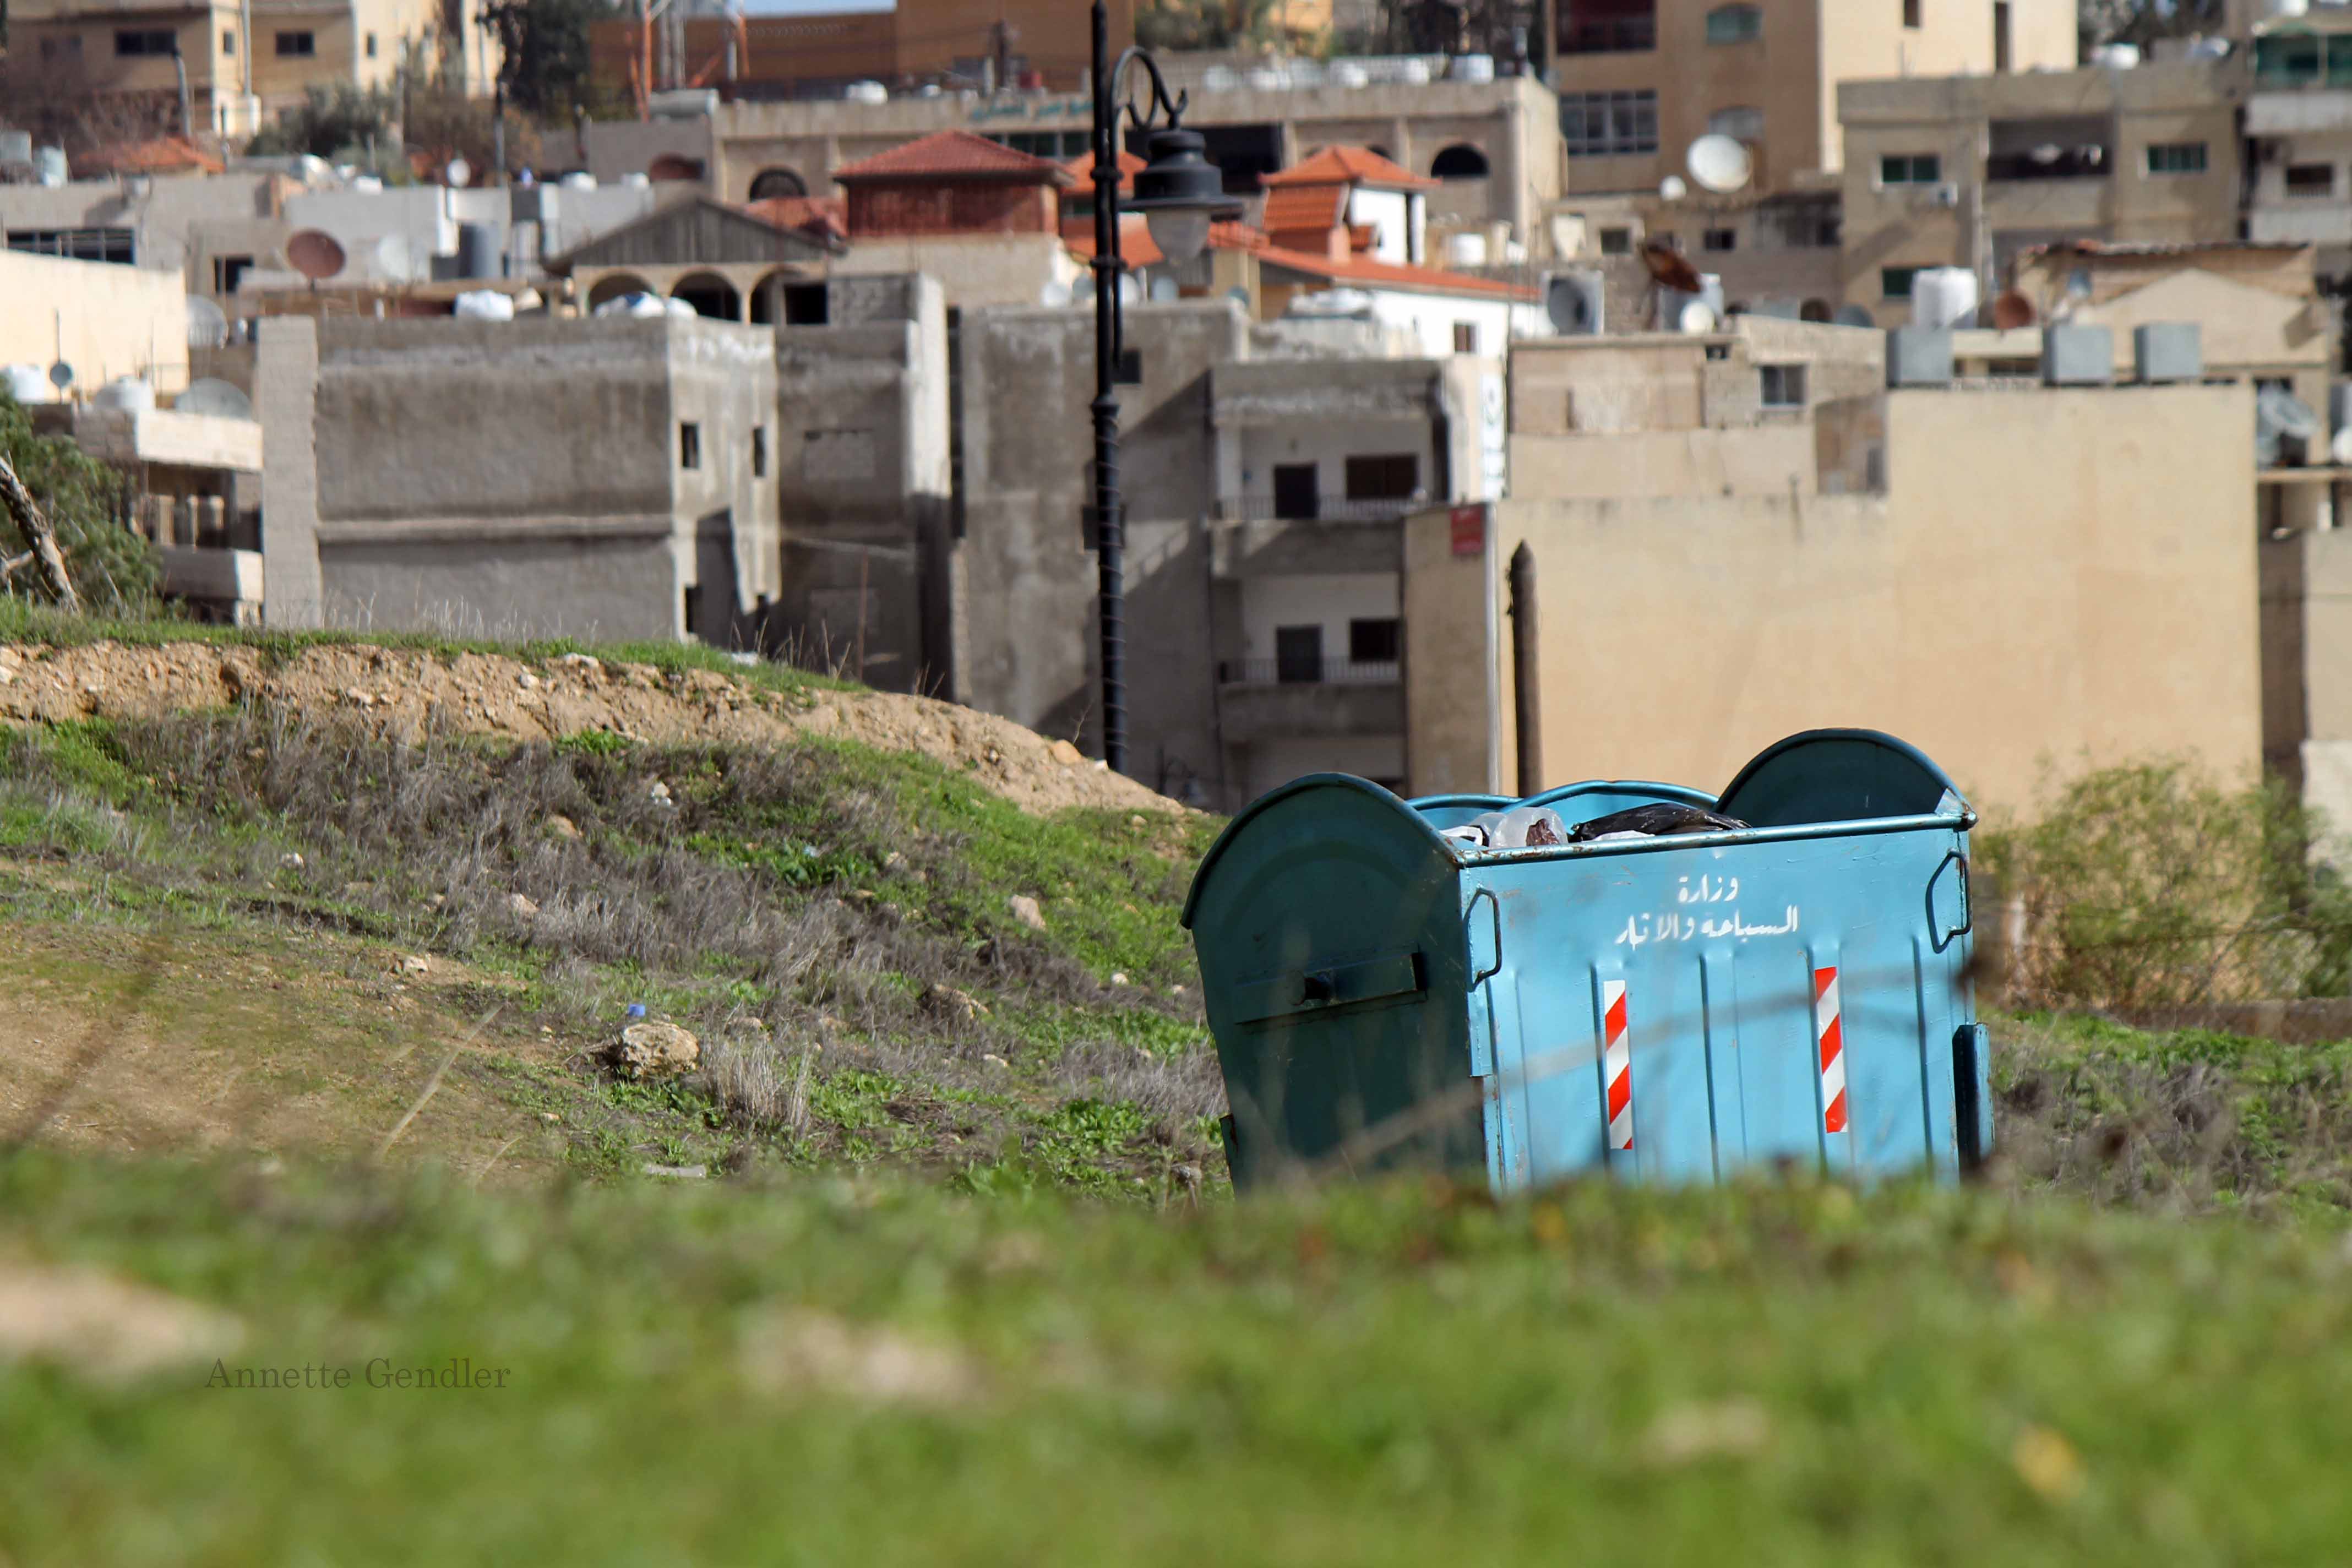 garbage dumpster in field with buildings behind it in Jerash, Jordan